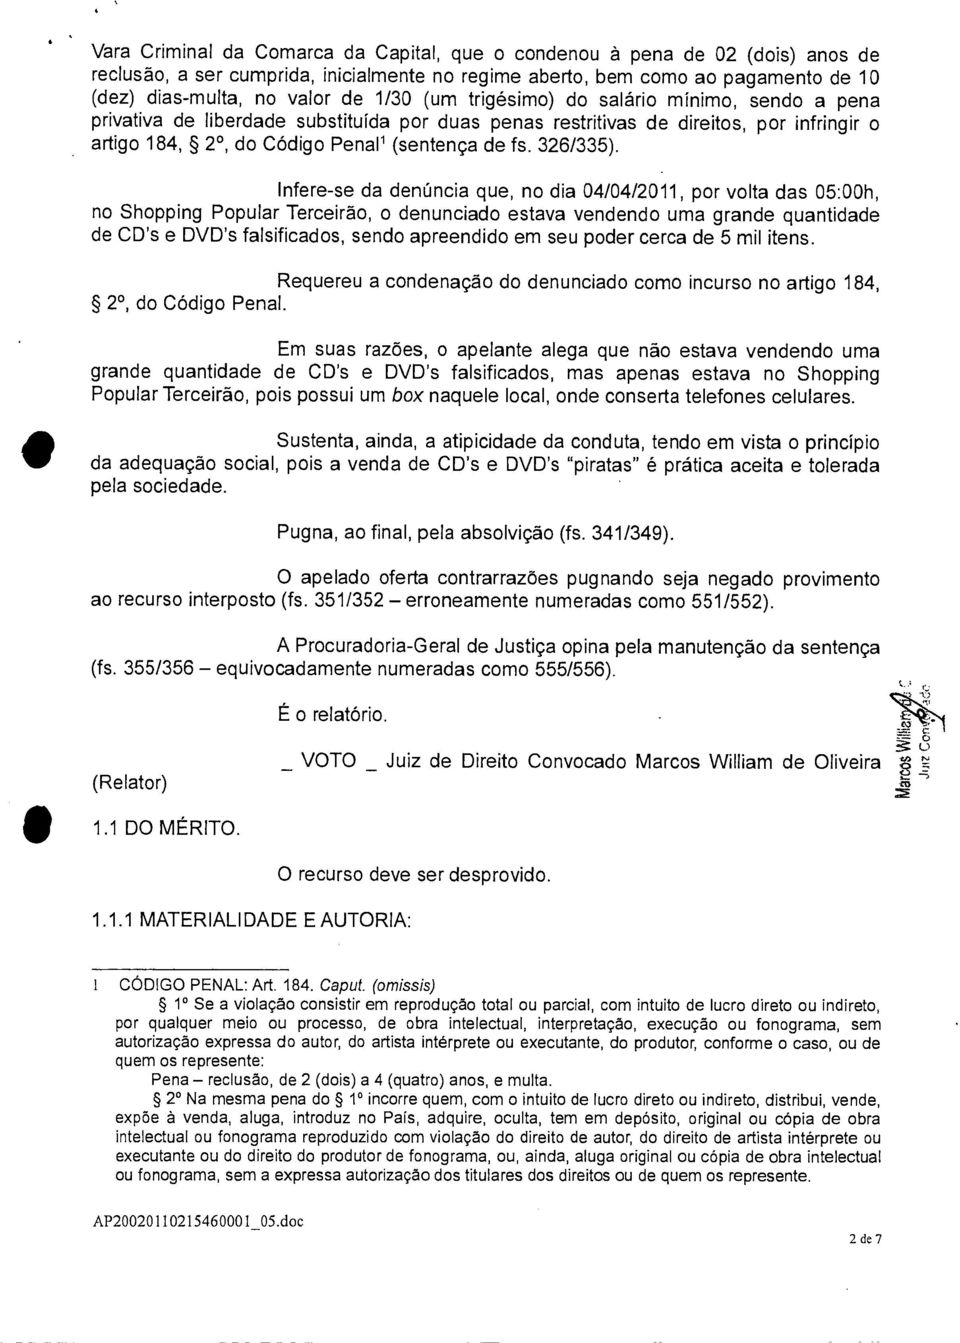 Infere-se da denúncia que, no dia 04/04/2011, por volta das 05:00h, no Shopping Popular Terceirão, o denunciado estava vendendo uma grande quantidade de CD's e DVD's falsificados, sendo apreendido em